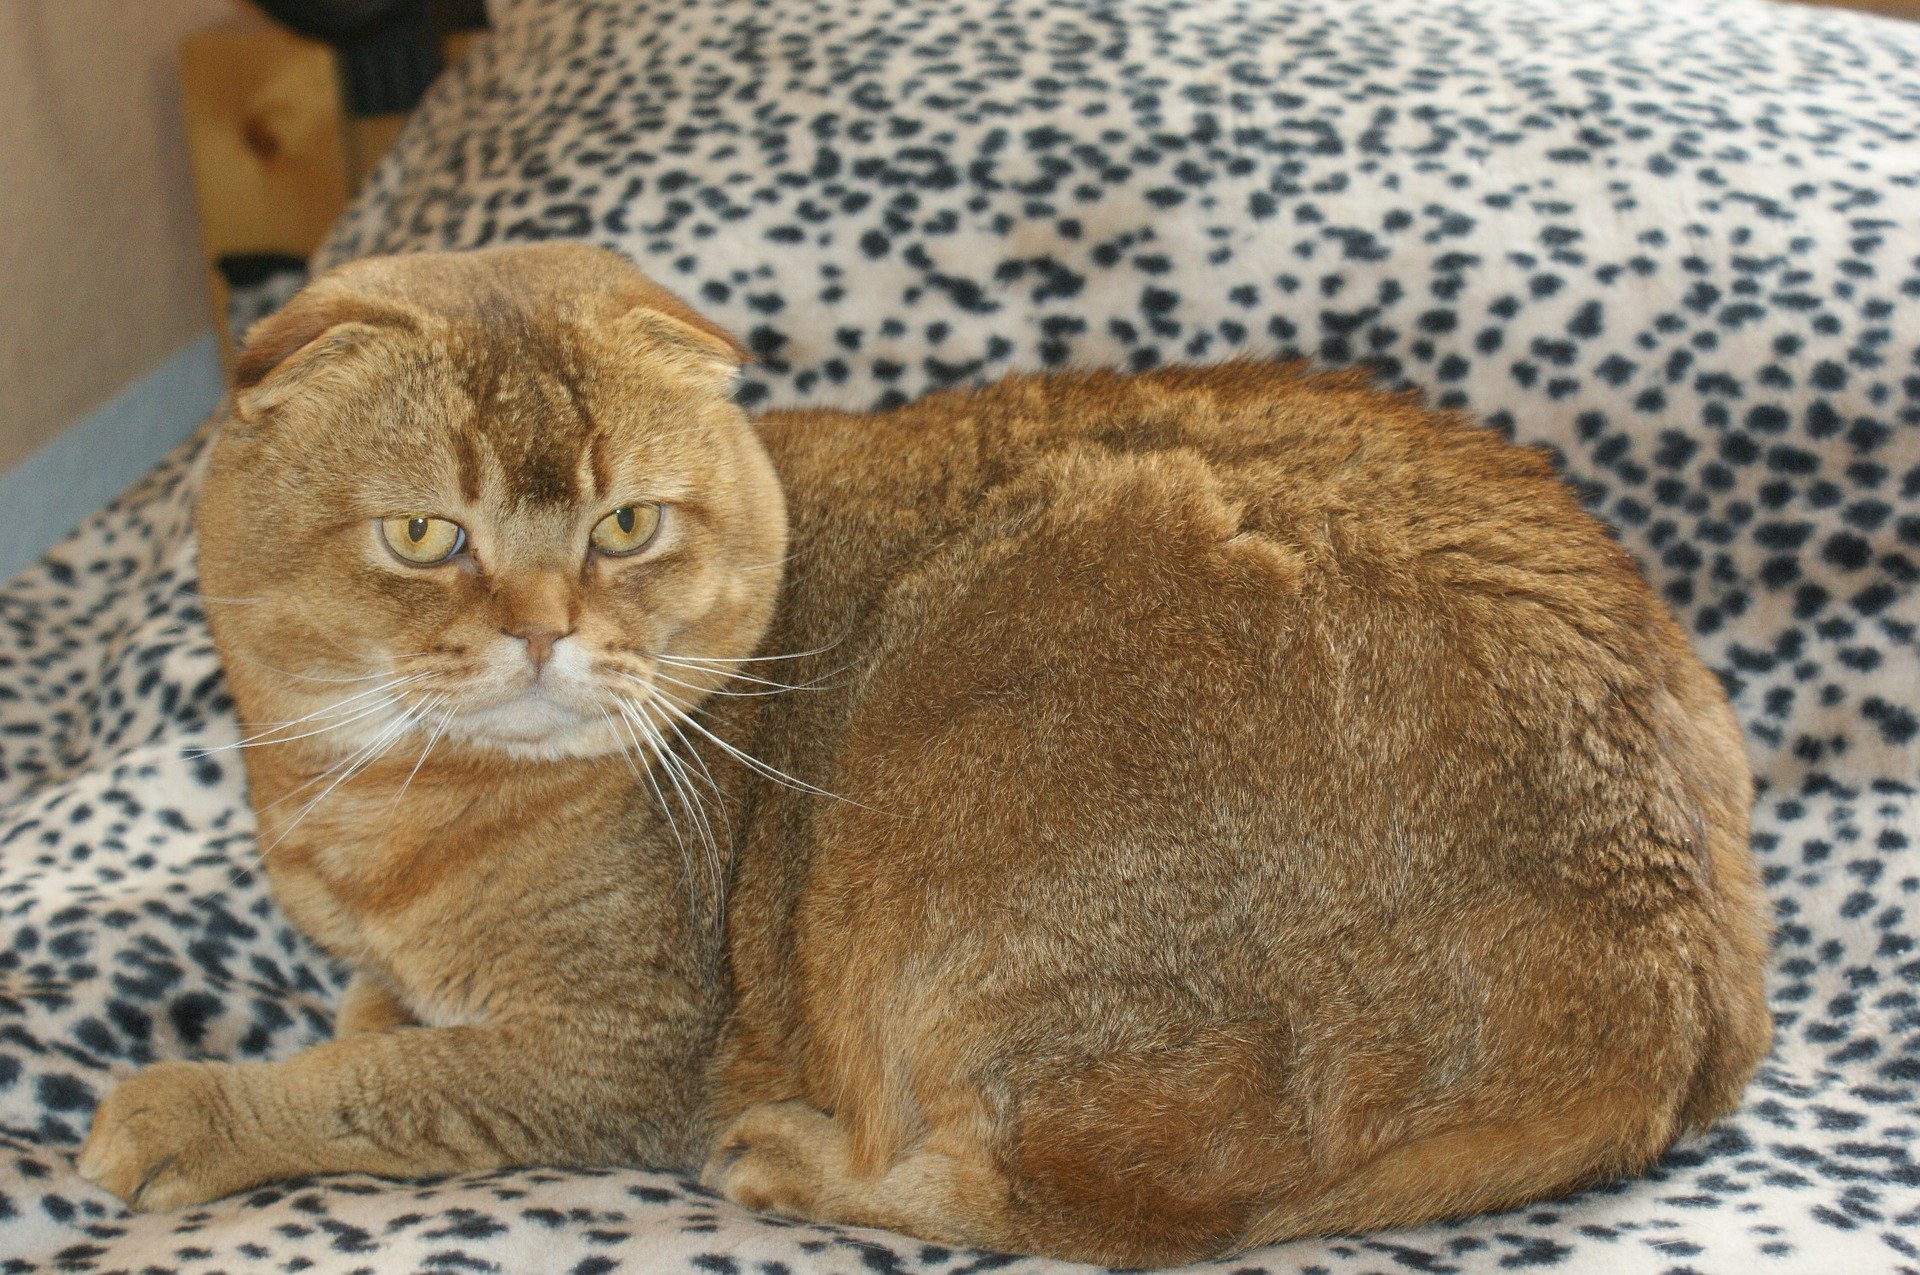 A skót lógófülű egy közepes méretű macska, és szokatlan formájú fülekkel rendelkezik, amik kicsik, kerekdedek és egymástól viszonylag távol állnak.